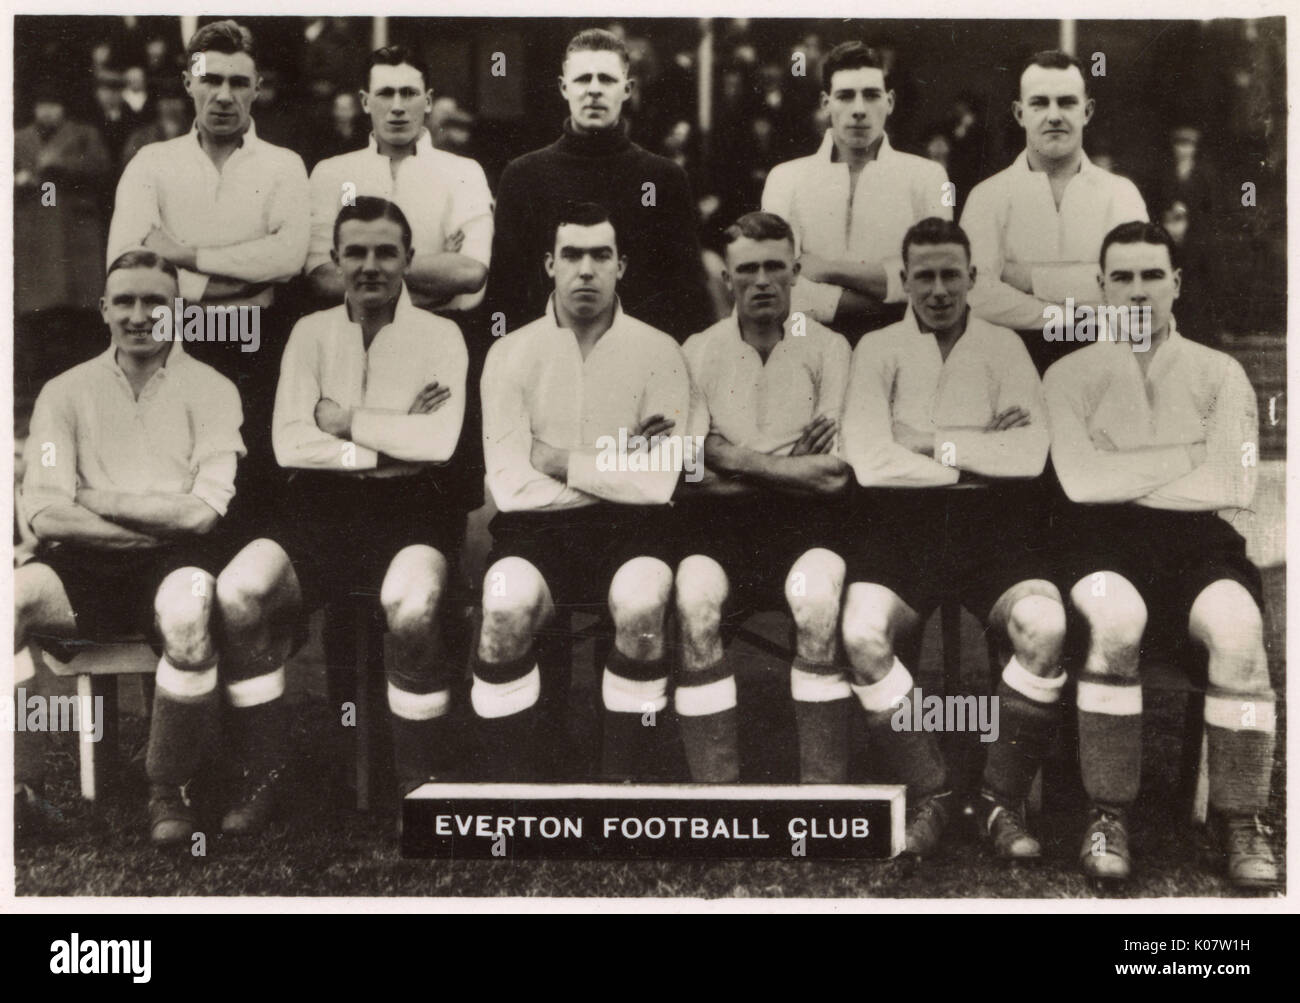 Equipo de Fútbol Everton FC 1936. Fila posterior: Britton, Mercer, Sagar, Jones, Blanco. Primera fila: Geldard, Bentham, Dean (capitán), Cunliffe, Leyfield, cocinero. Fecha: 1936 Foto de stock